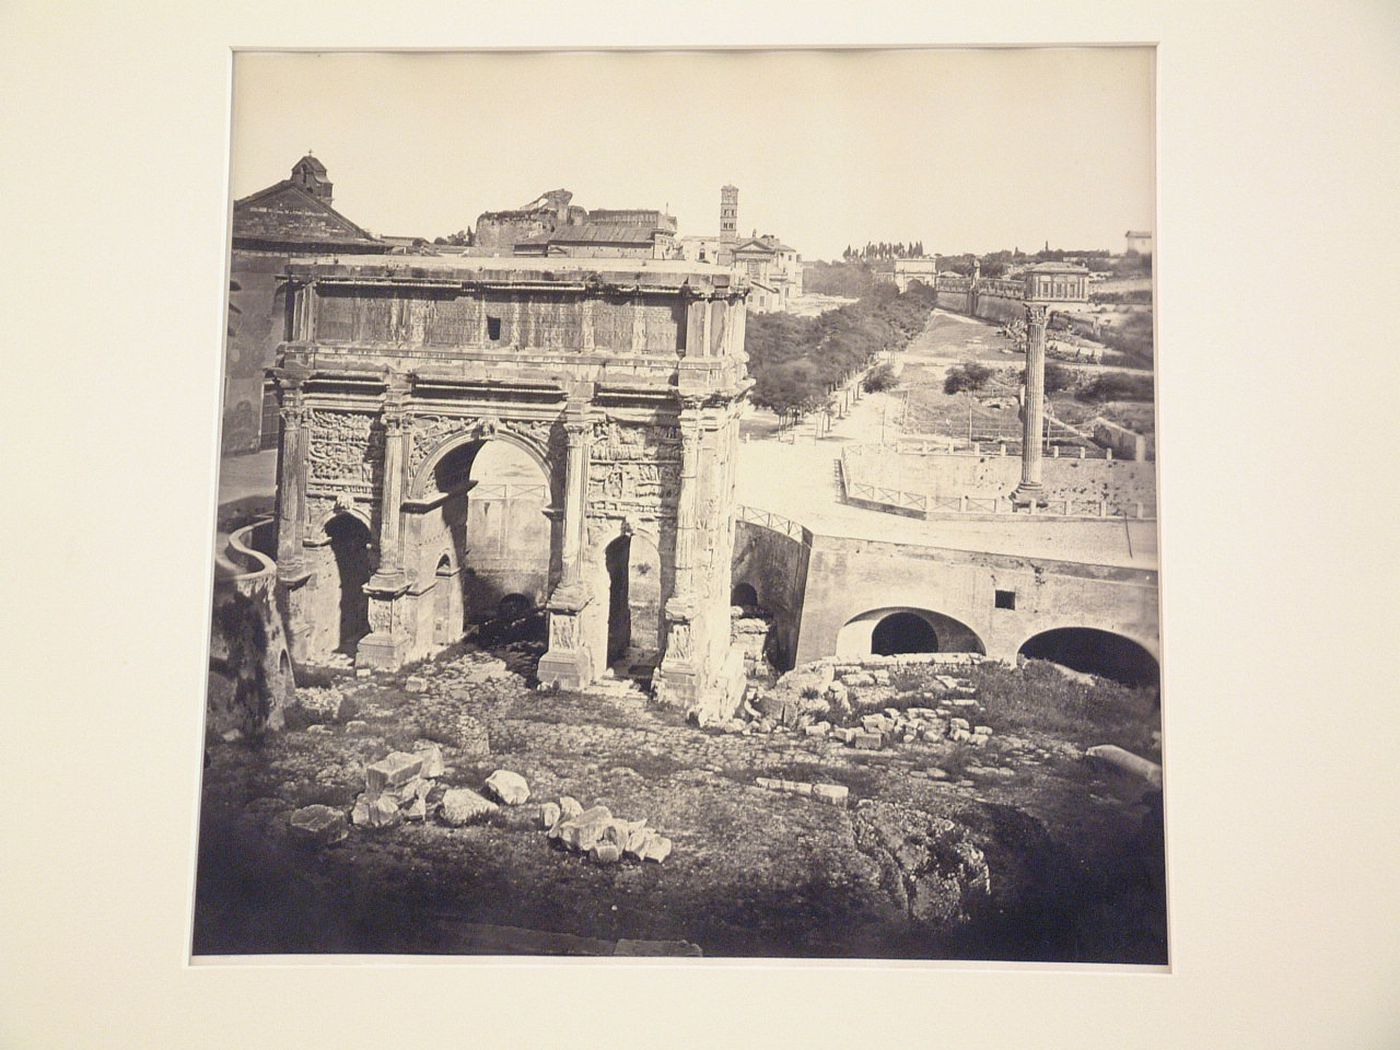 Forum: Arch of Septinius Severus, Rome, Italy